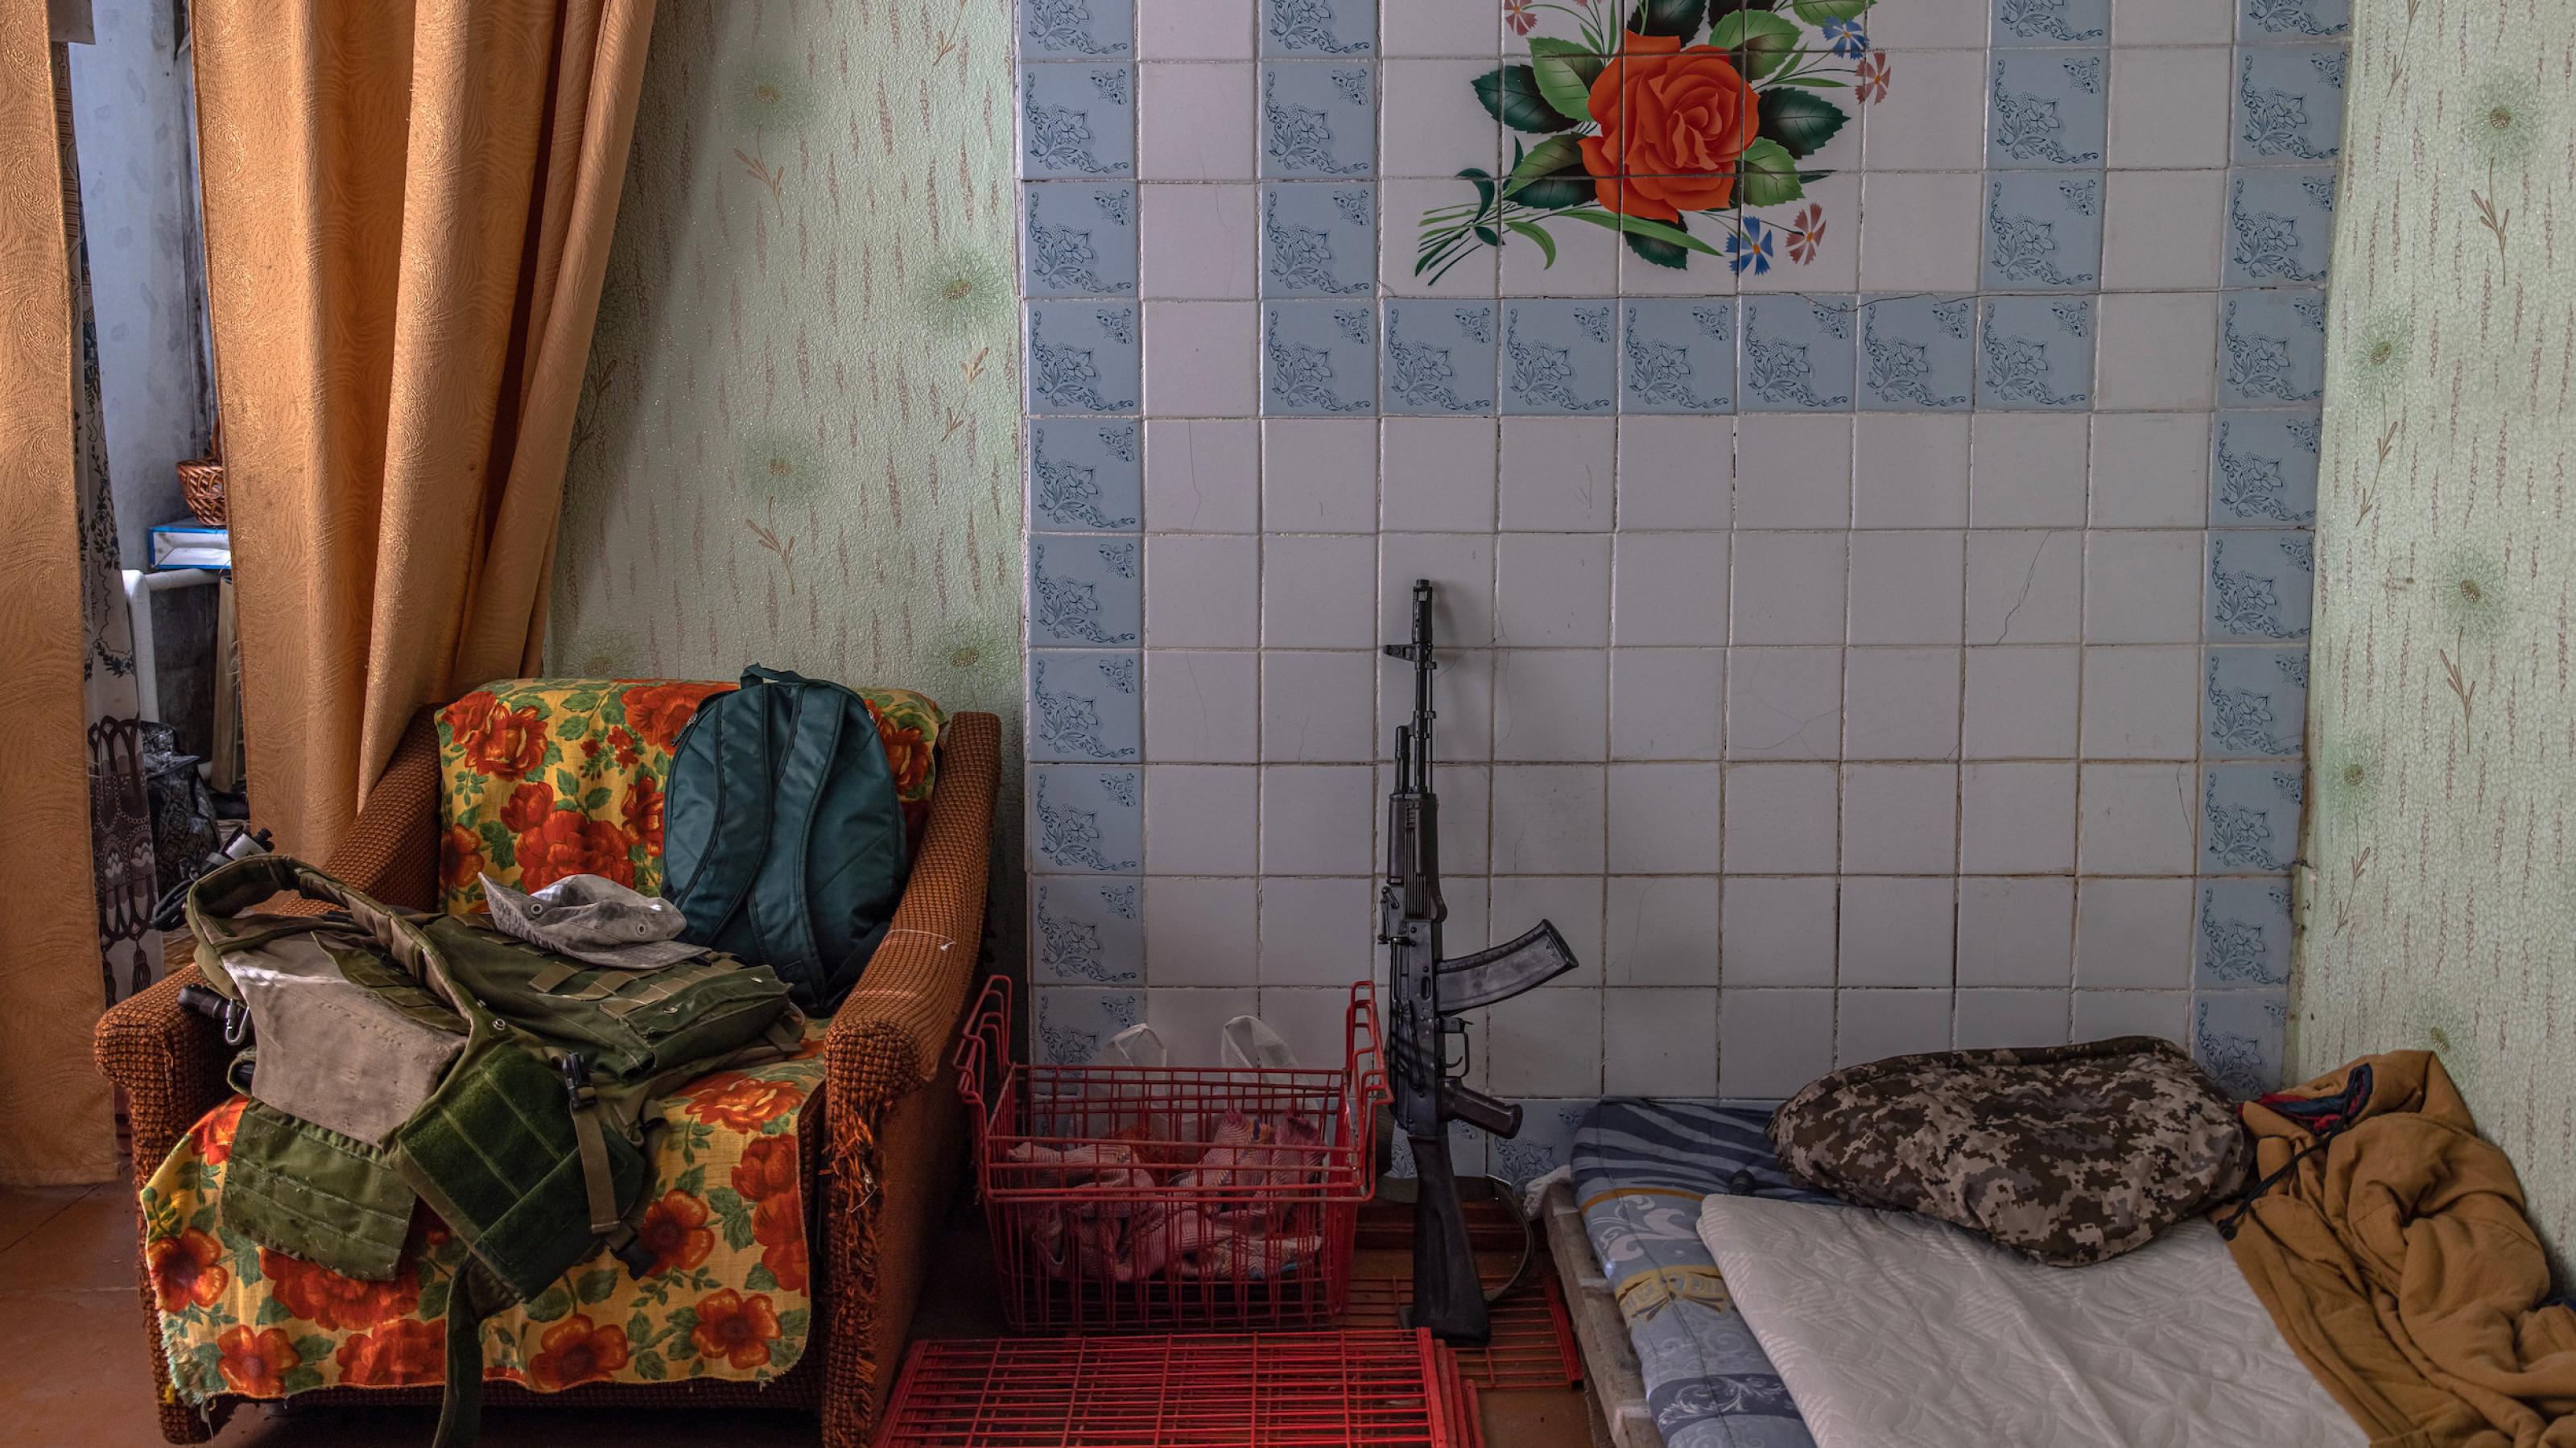 Das Gewehr eines ukrainischen Soldaten lehnt an einer bunt gekachelten Wand neben einem Schlaflager. Das Haus befindet sich in Huliaipole, ganz in der Nähe der Frontlinie.